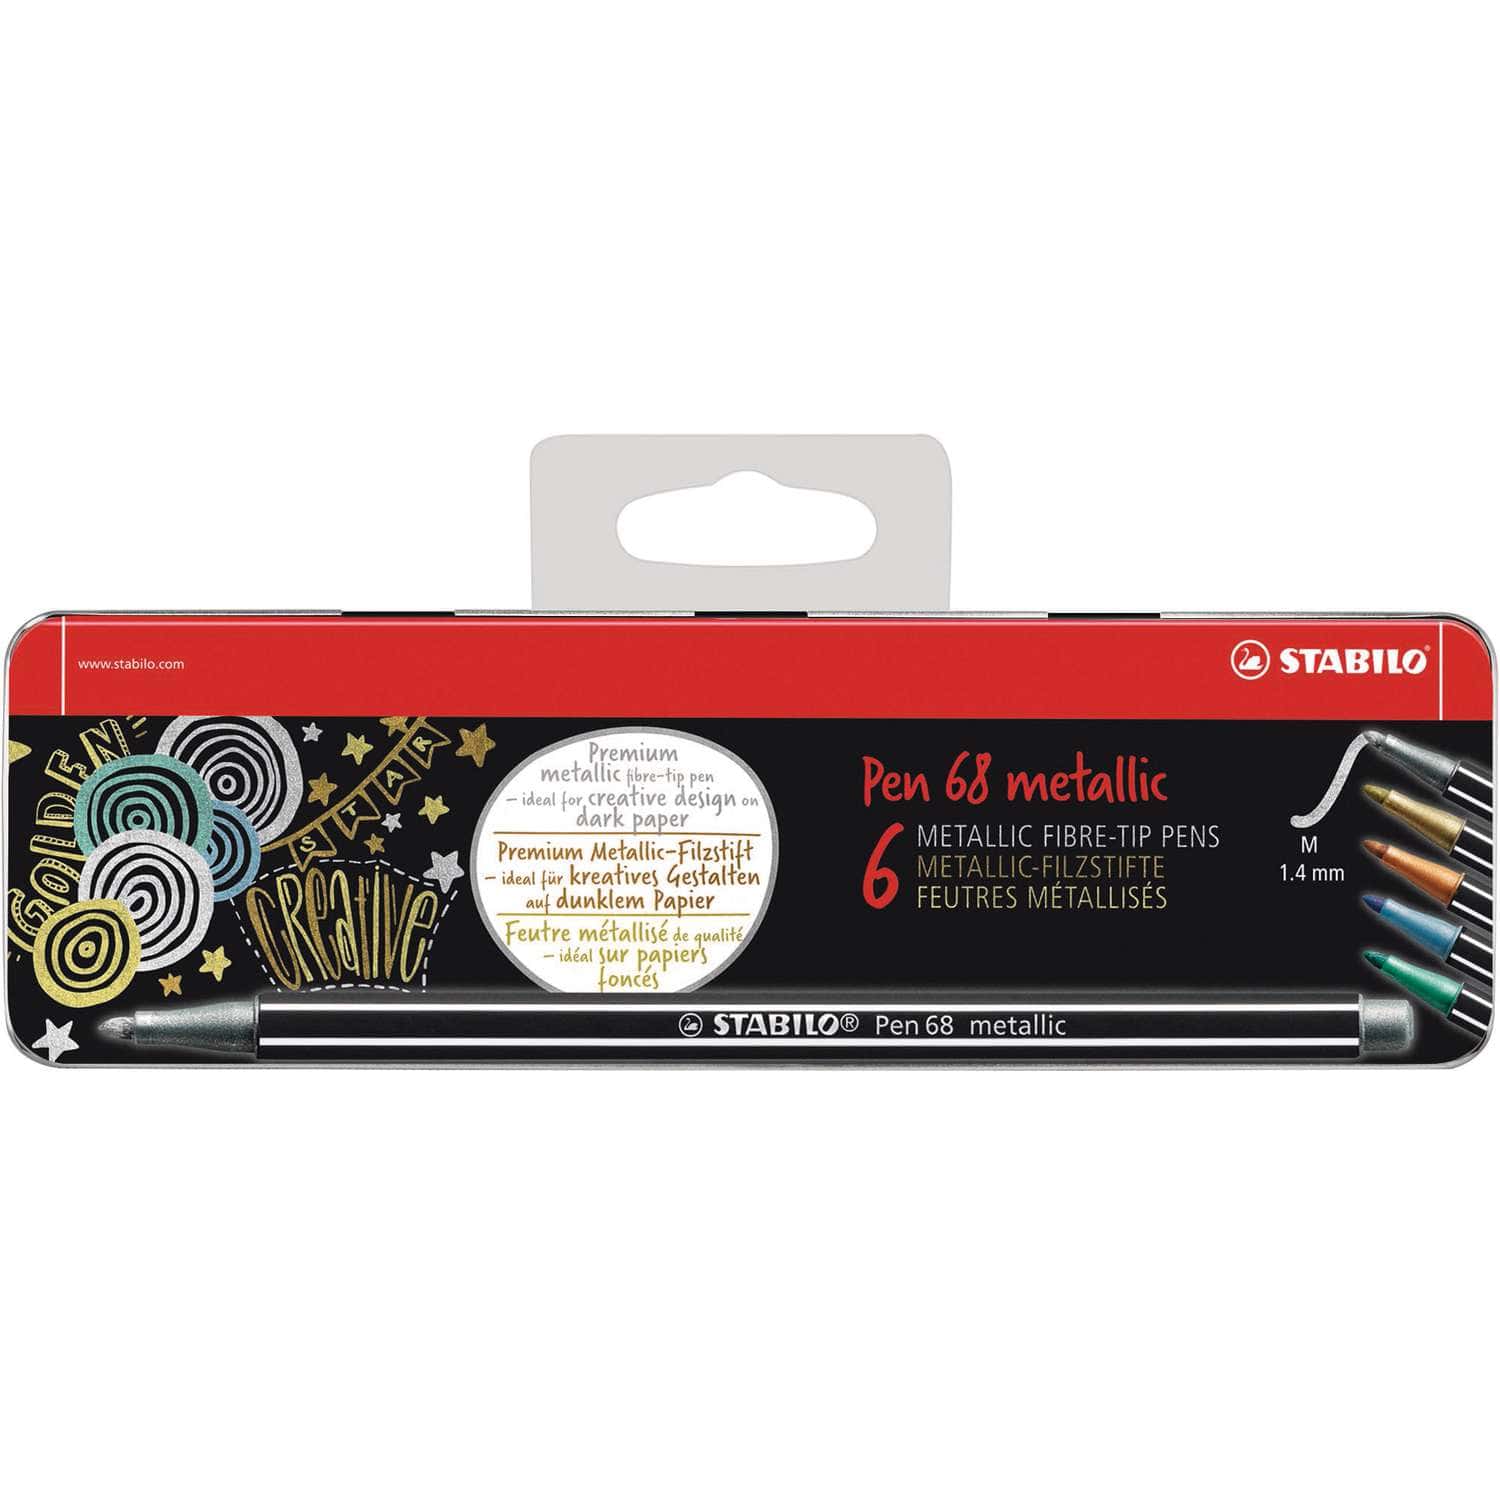 Extractie Sluiting klem STABILO® Pen 68 metallic, 6-delige set in metalen doos